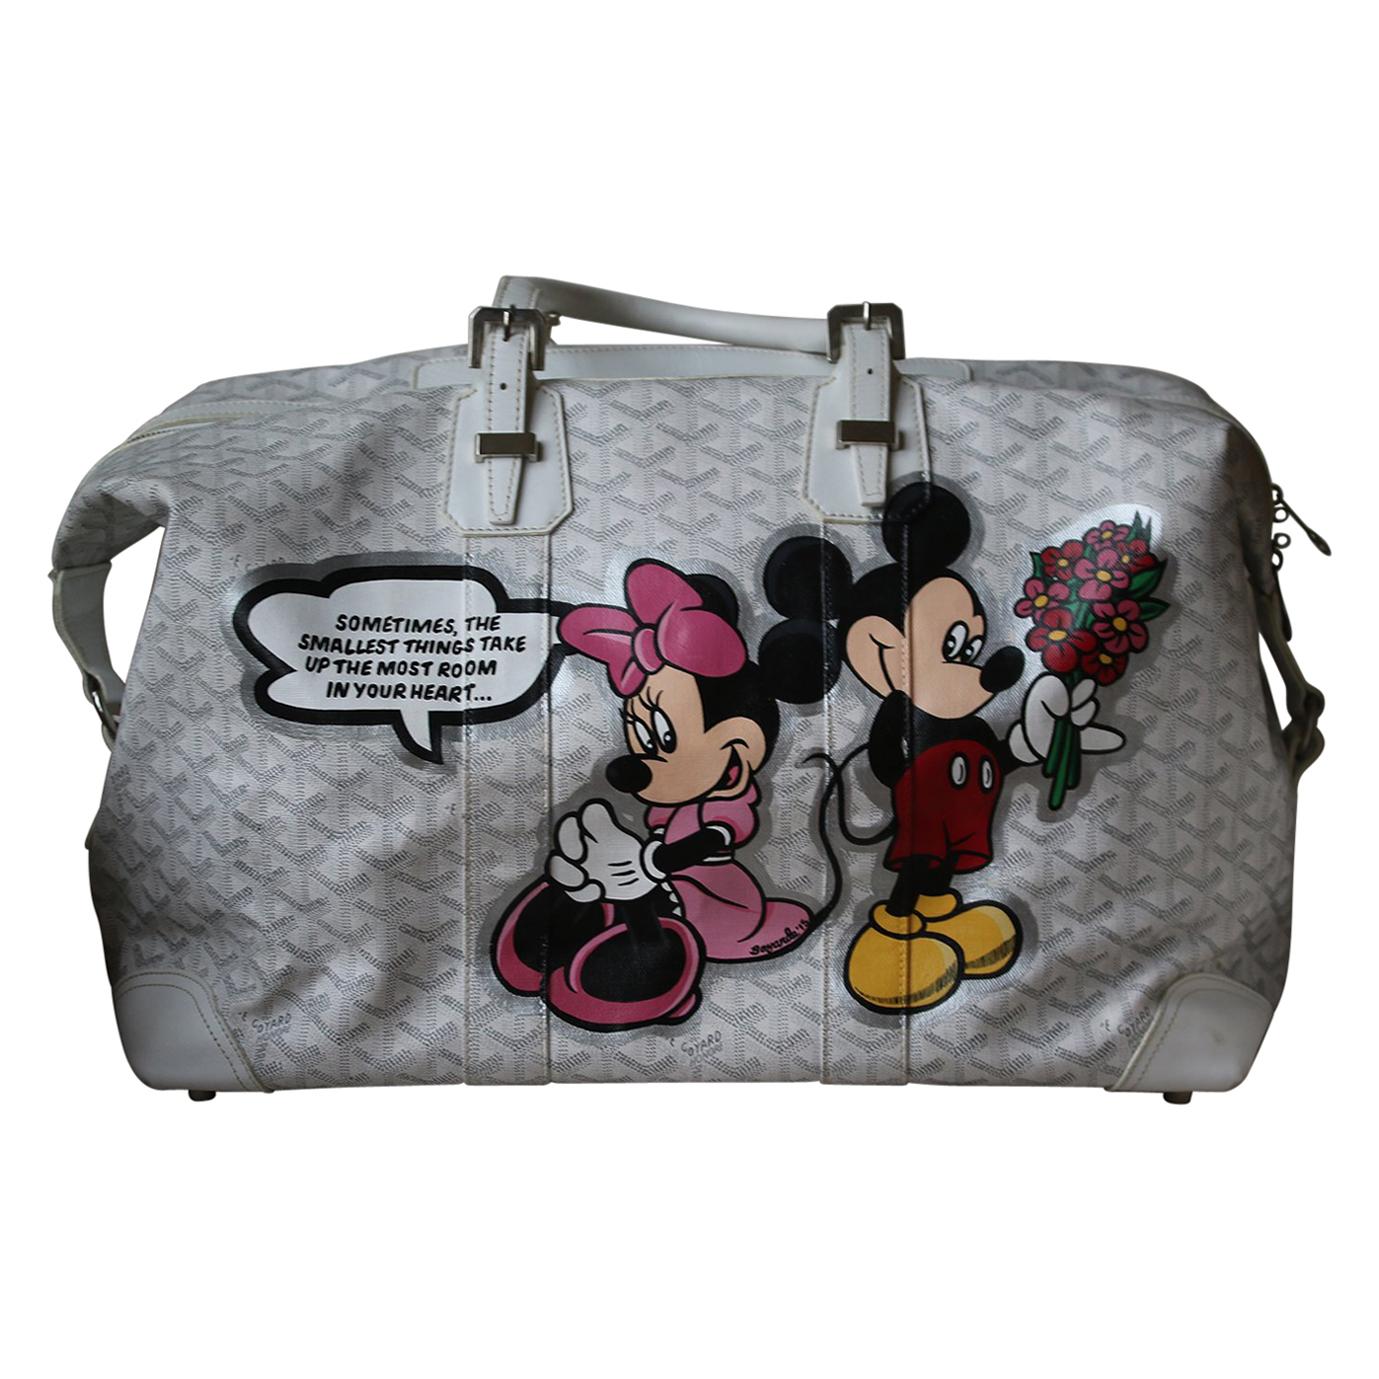 Goyard Duffle Bag - For Sale on 1stDibs  goyard duffle price, how much is  goyard duffle bag, goyard weekender